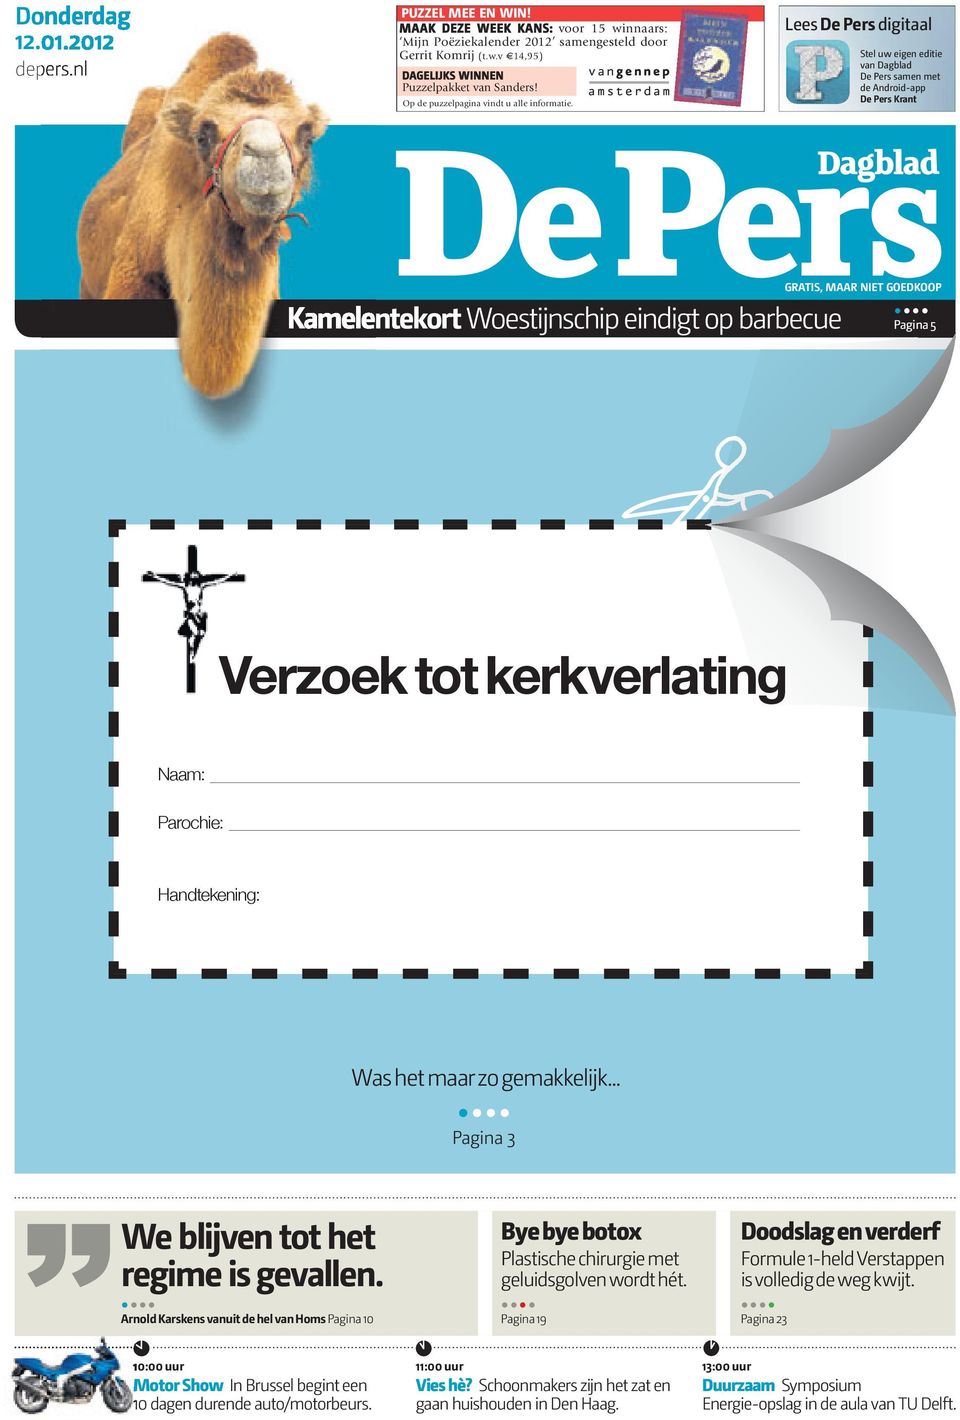 Lees De Pers digitaal Stel uw eigen editie van Dagblad De Pers samen met de Android-app De Pers Krant GRATIS, MAAR NIET GOEDKOOP Kamelentekort Woestijnschip eindigt op barbecue.